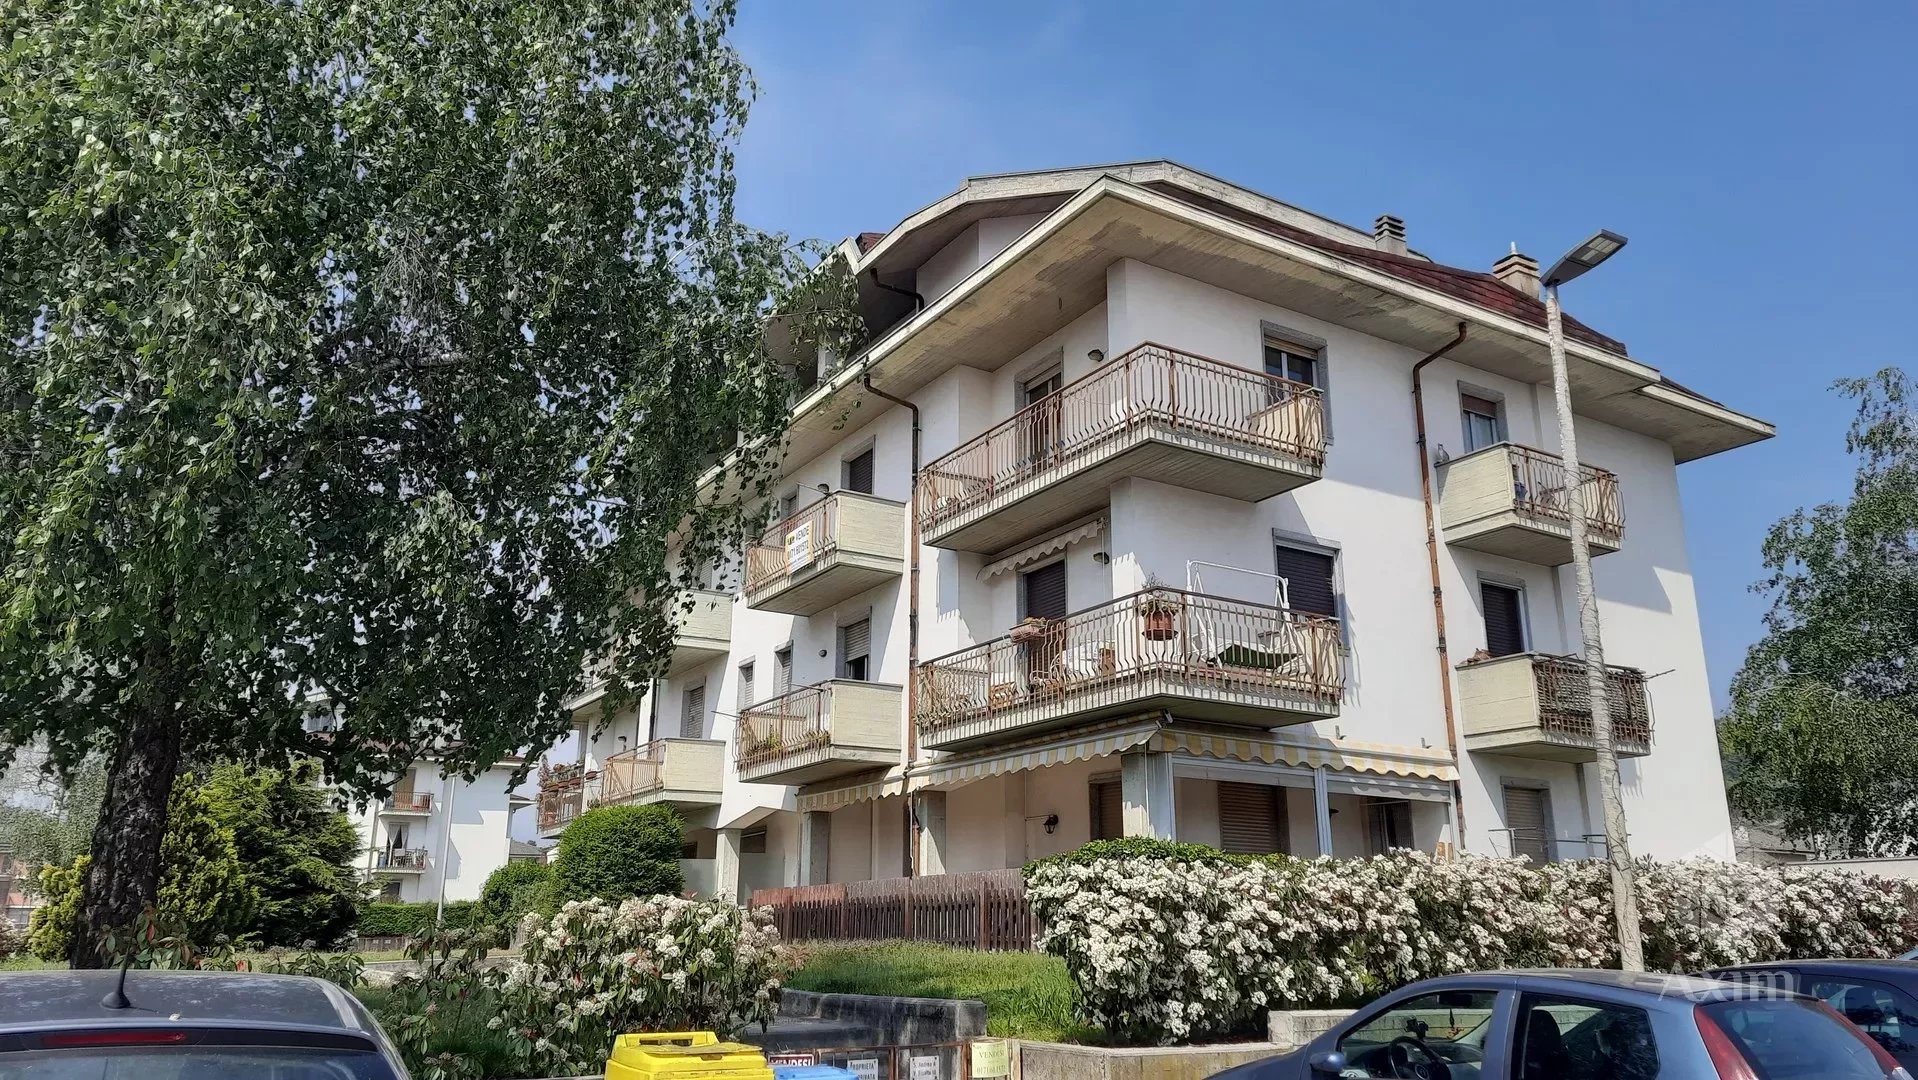 Sale Apartment - Caraglio - Italy